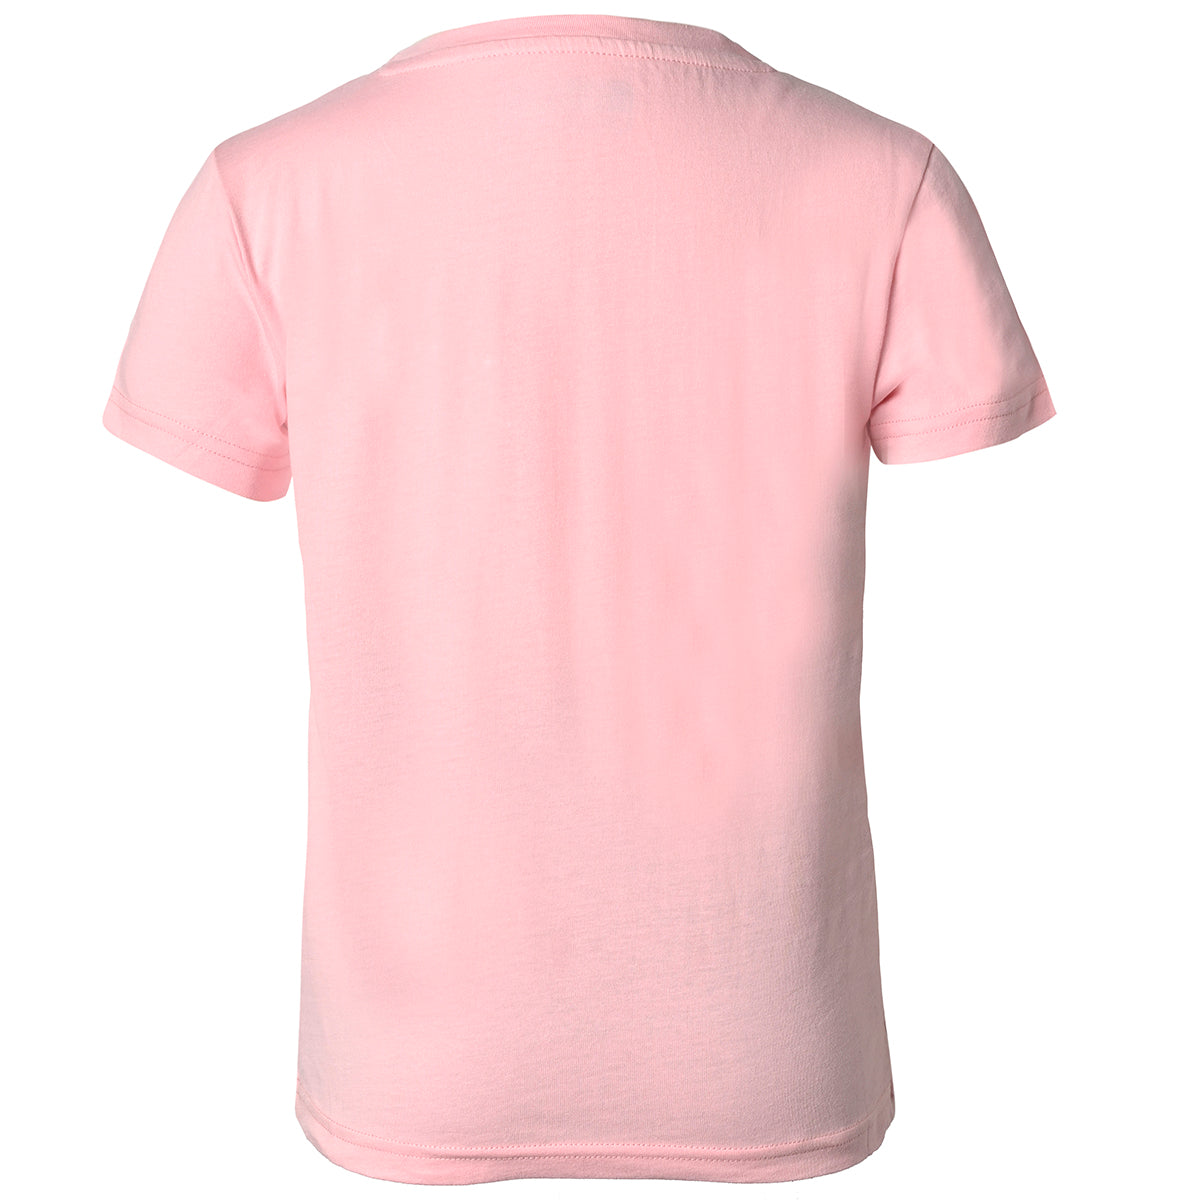 Camiseta Rosa Quissy Niño - imagen 2